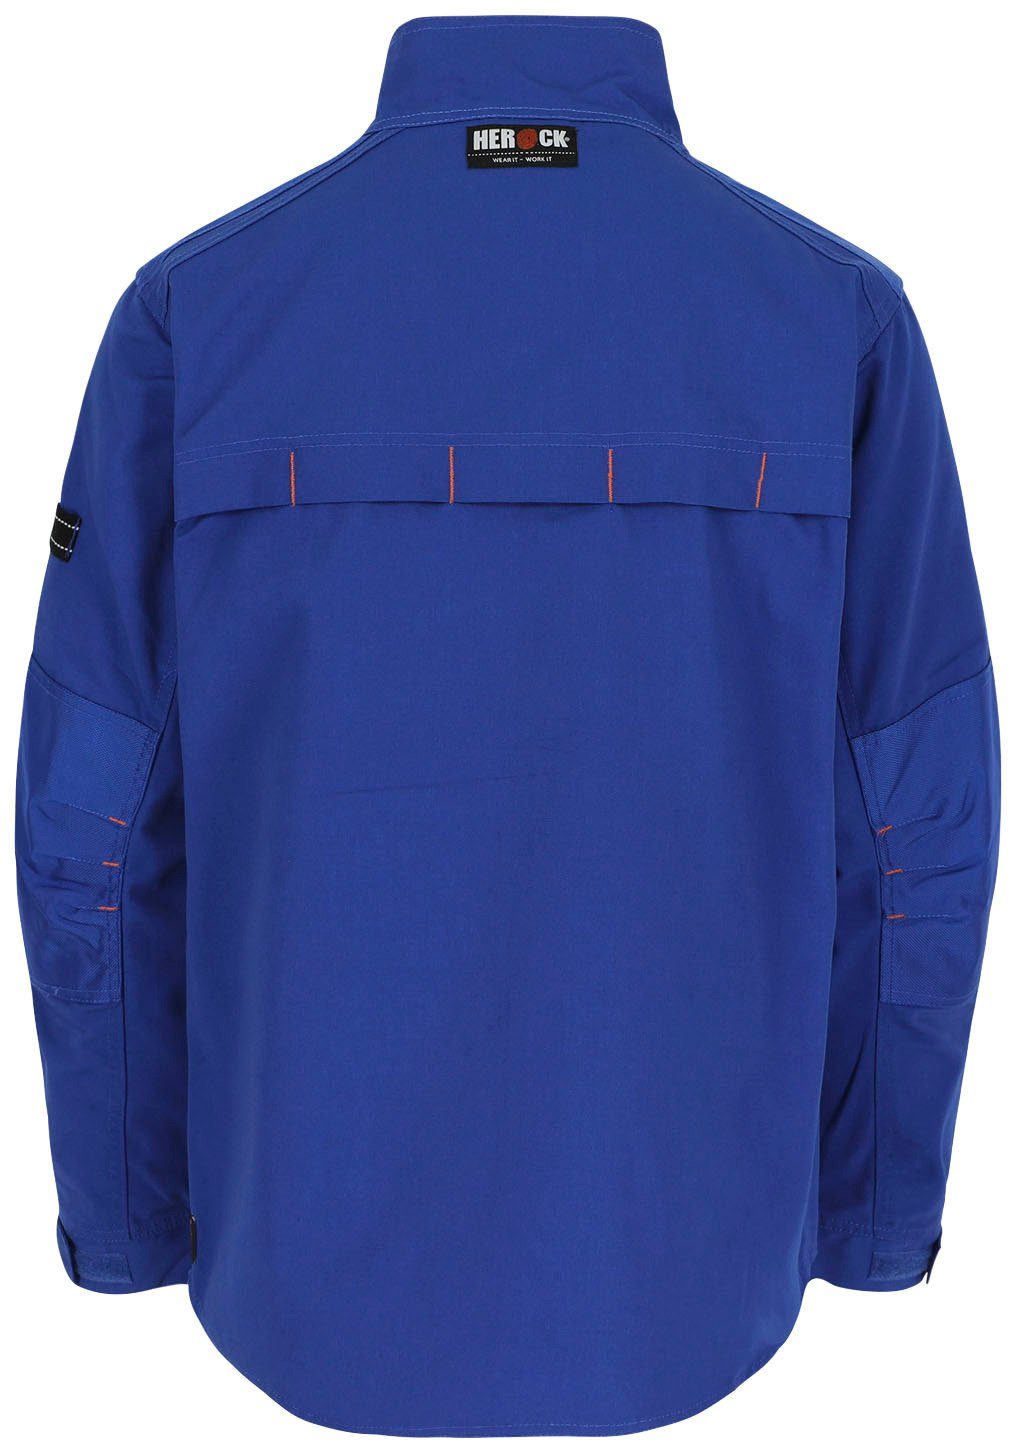 blau Taschen robust Anzar - Jacke Wasserabweisend - Herock - 7 verstellbare Arbeitsjacke Bündchen